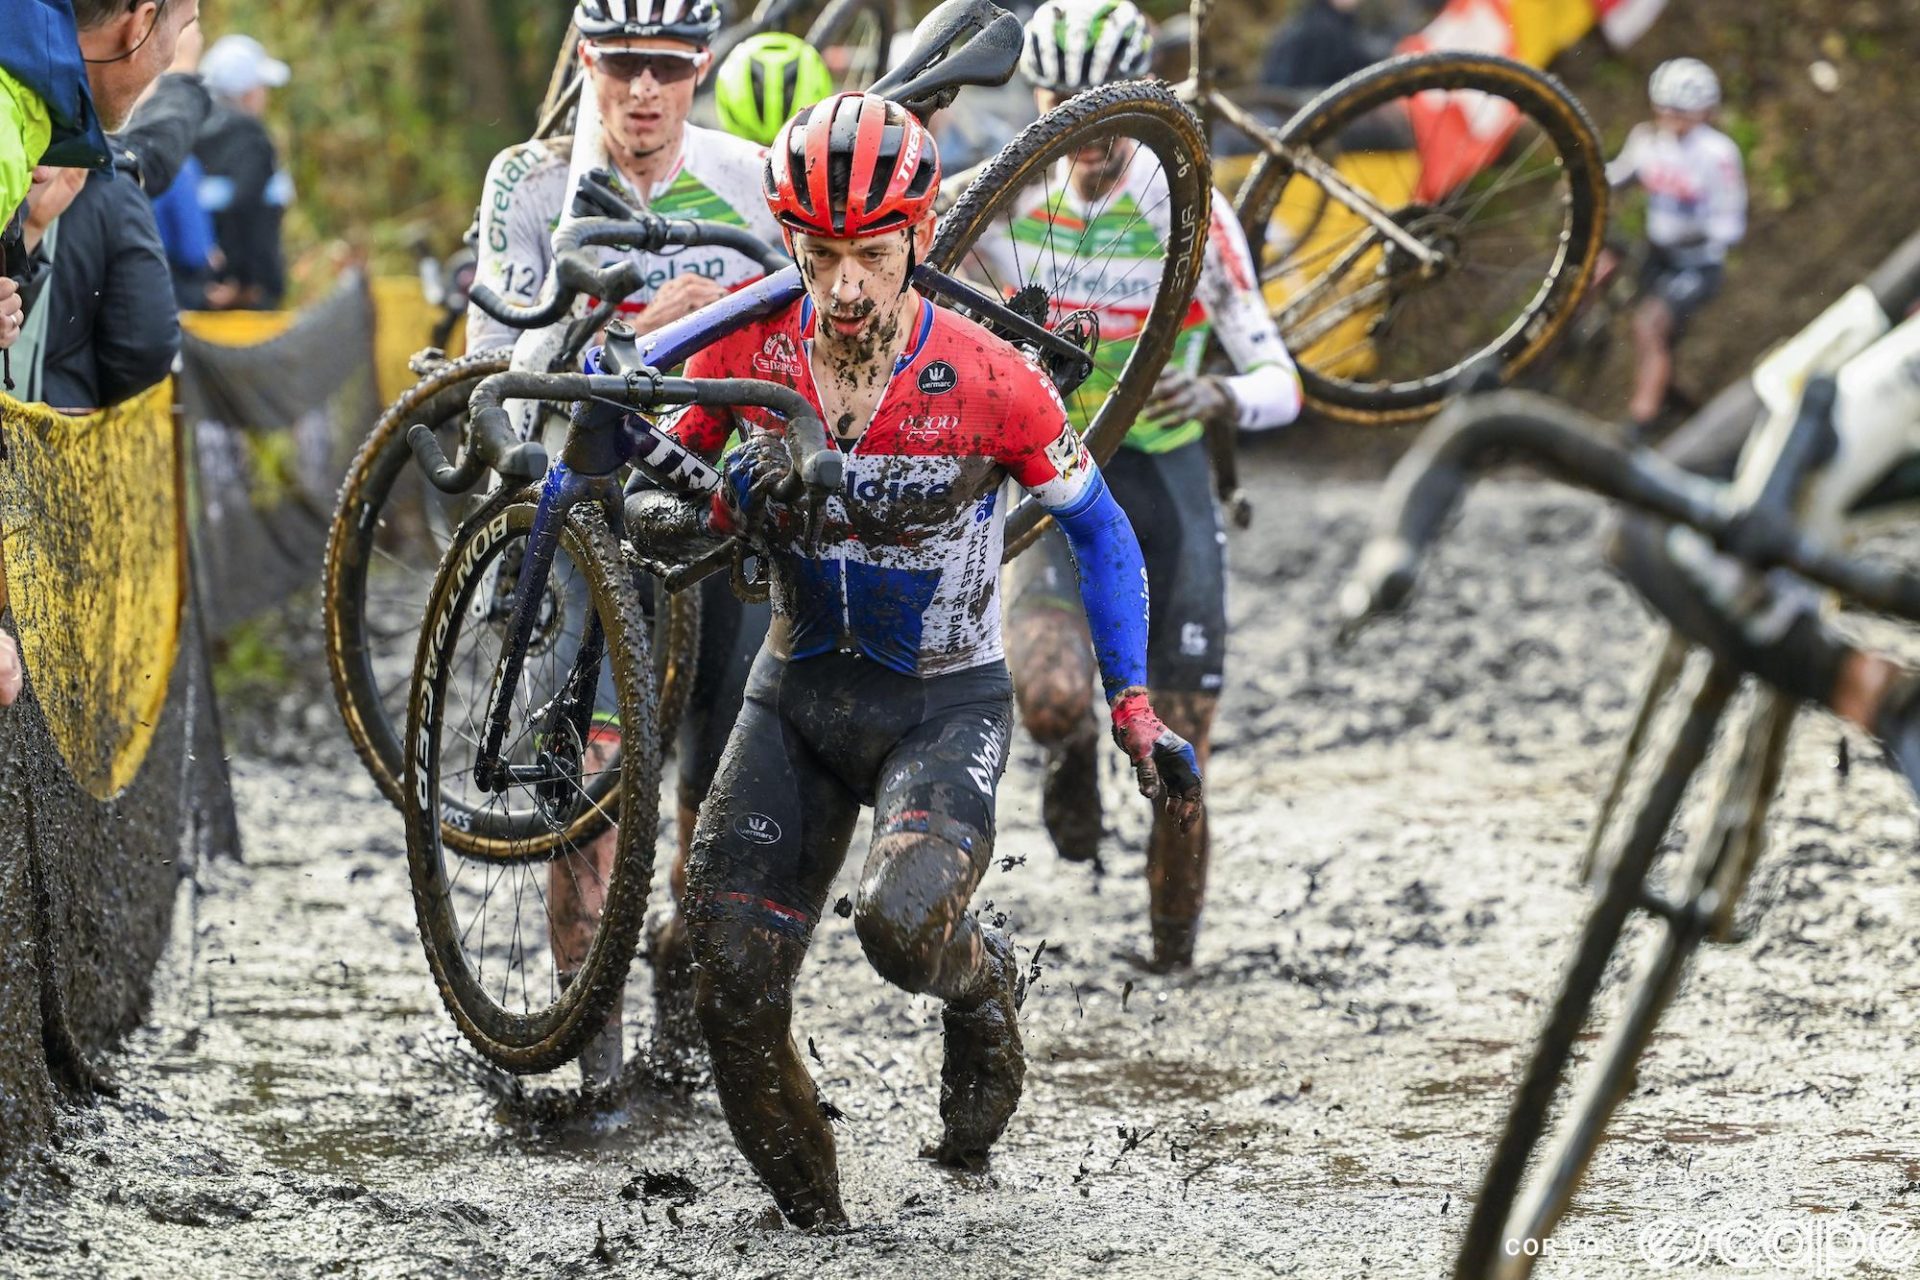 Lars van der Haar shoulders his bike to run in the mud at Superprestige Niel. He has an intense look of focus on his face.